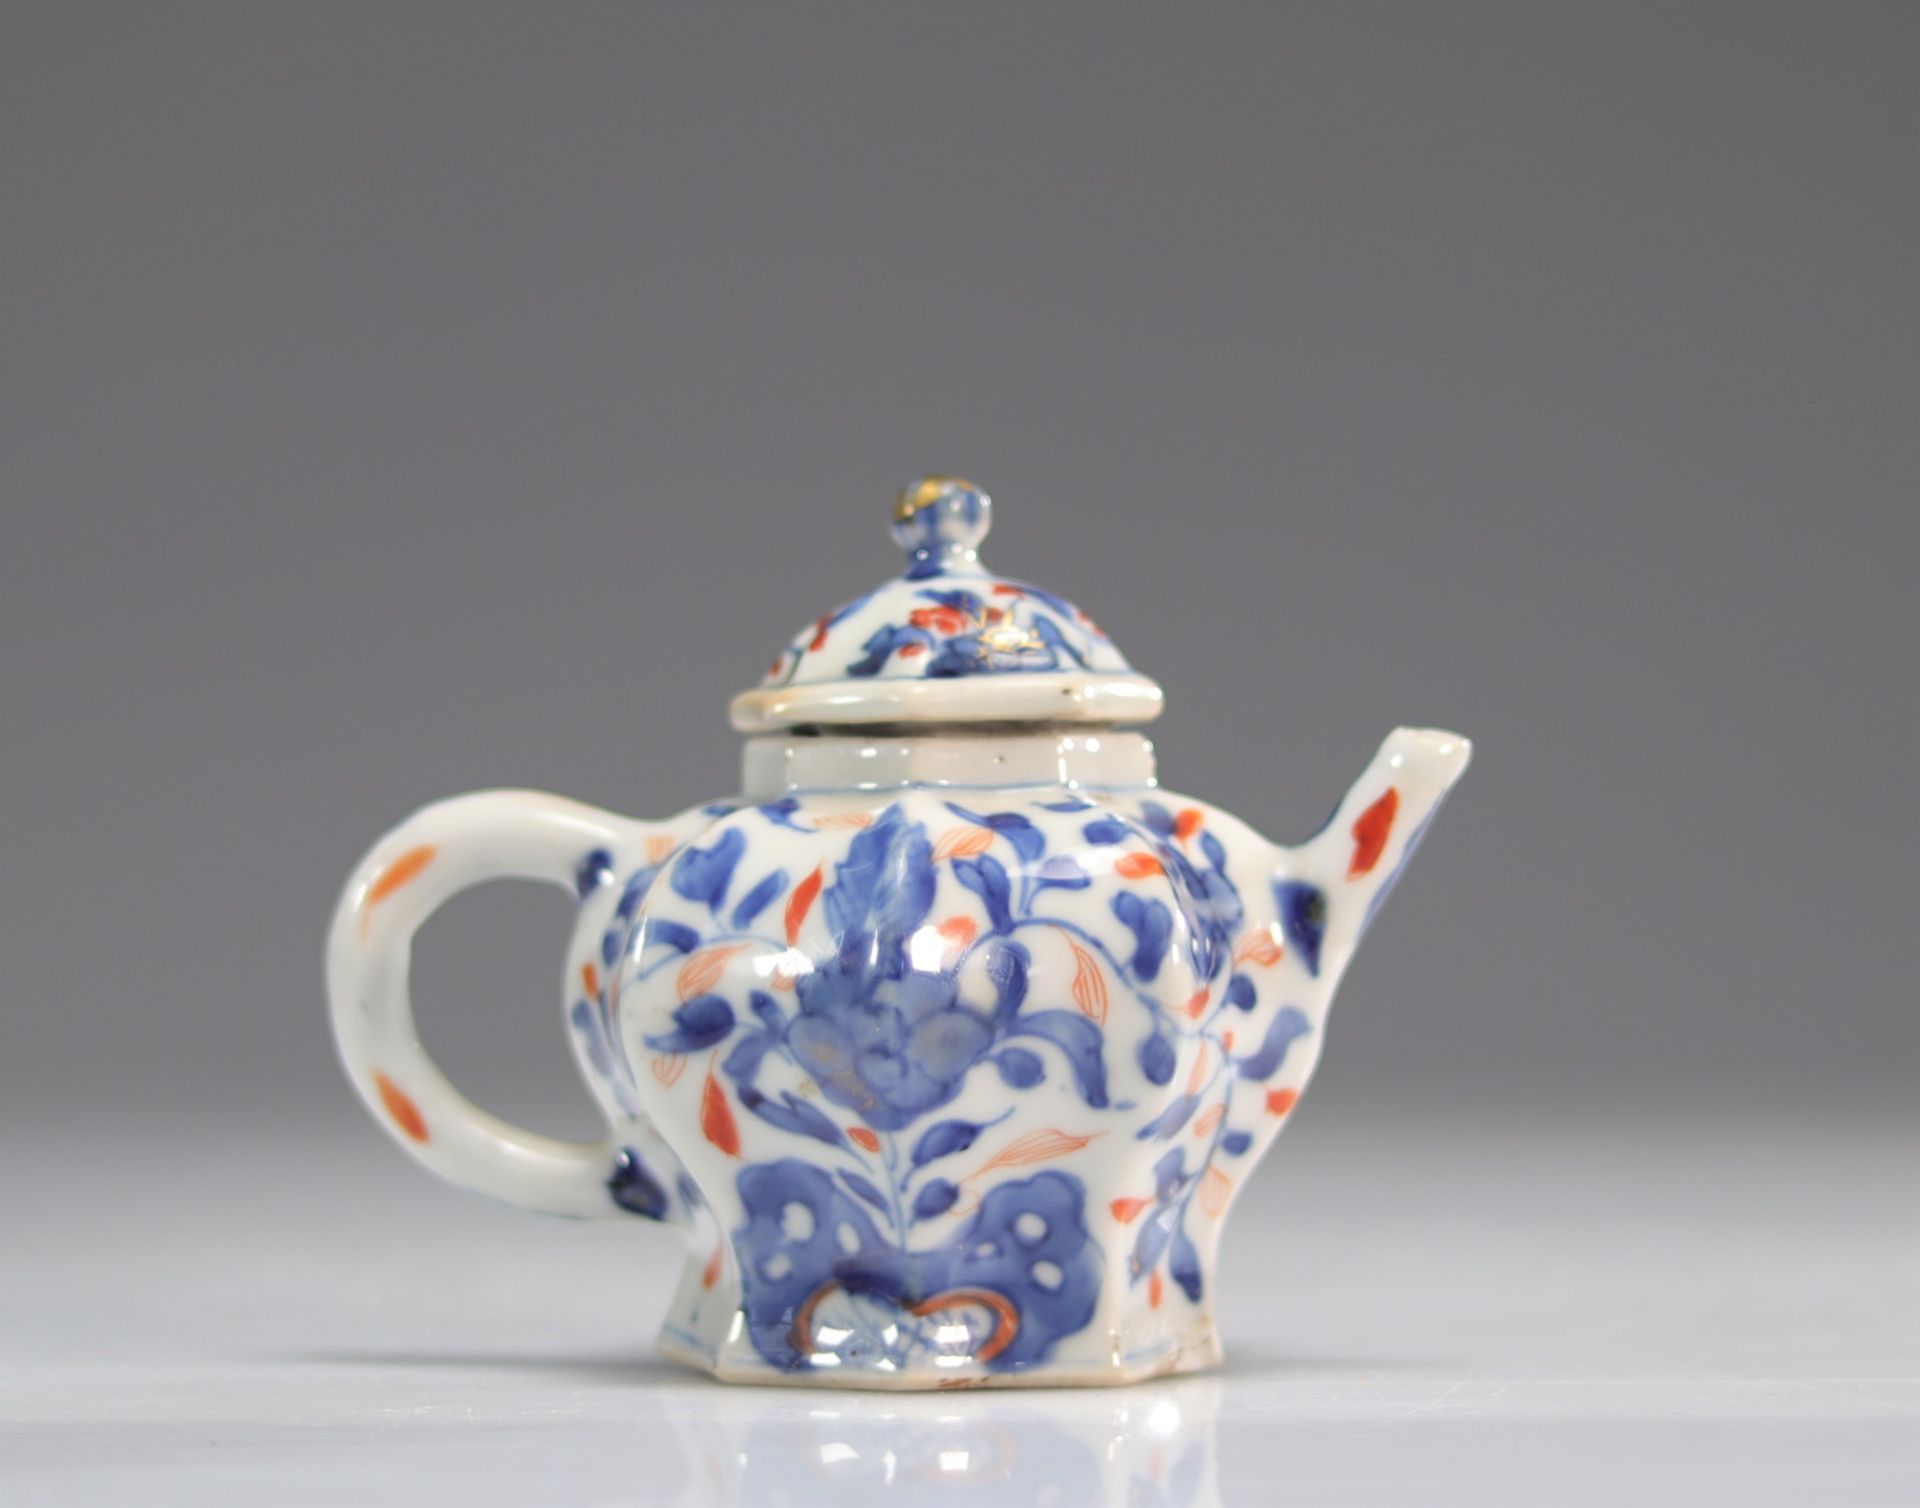 Kangxi period teapot - imari export - China